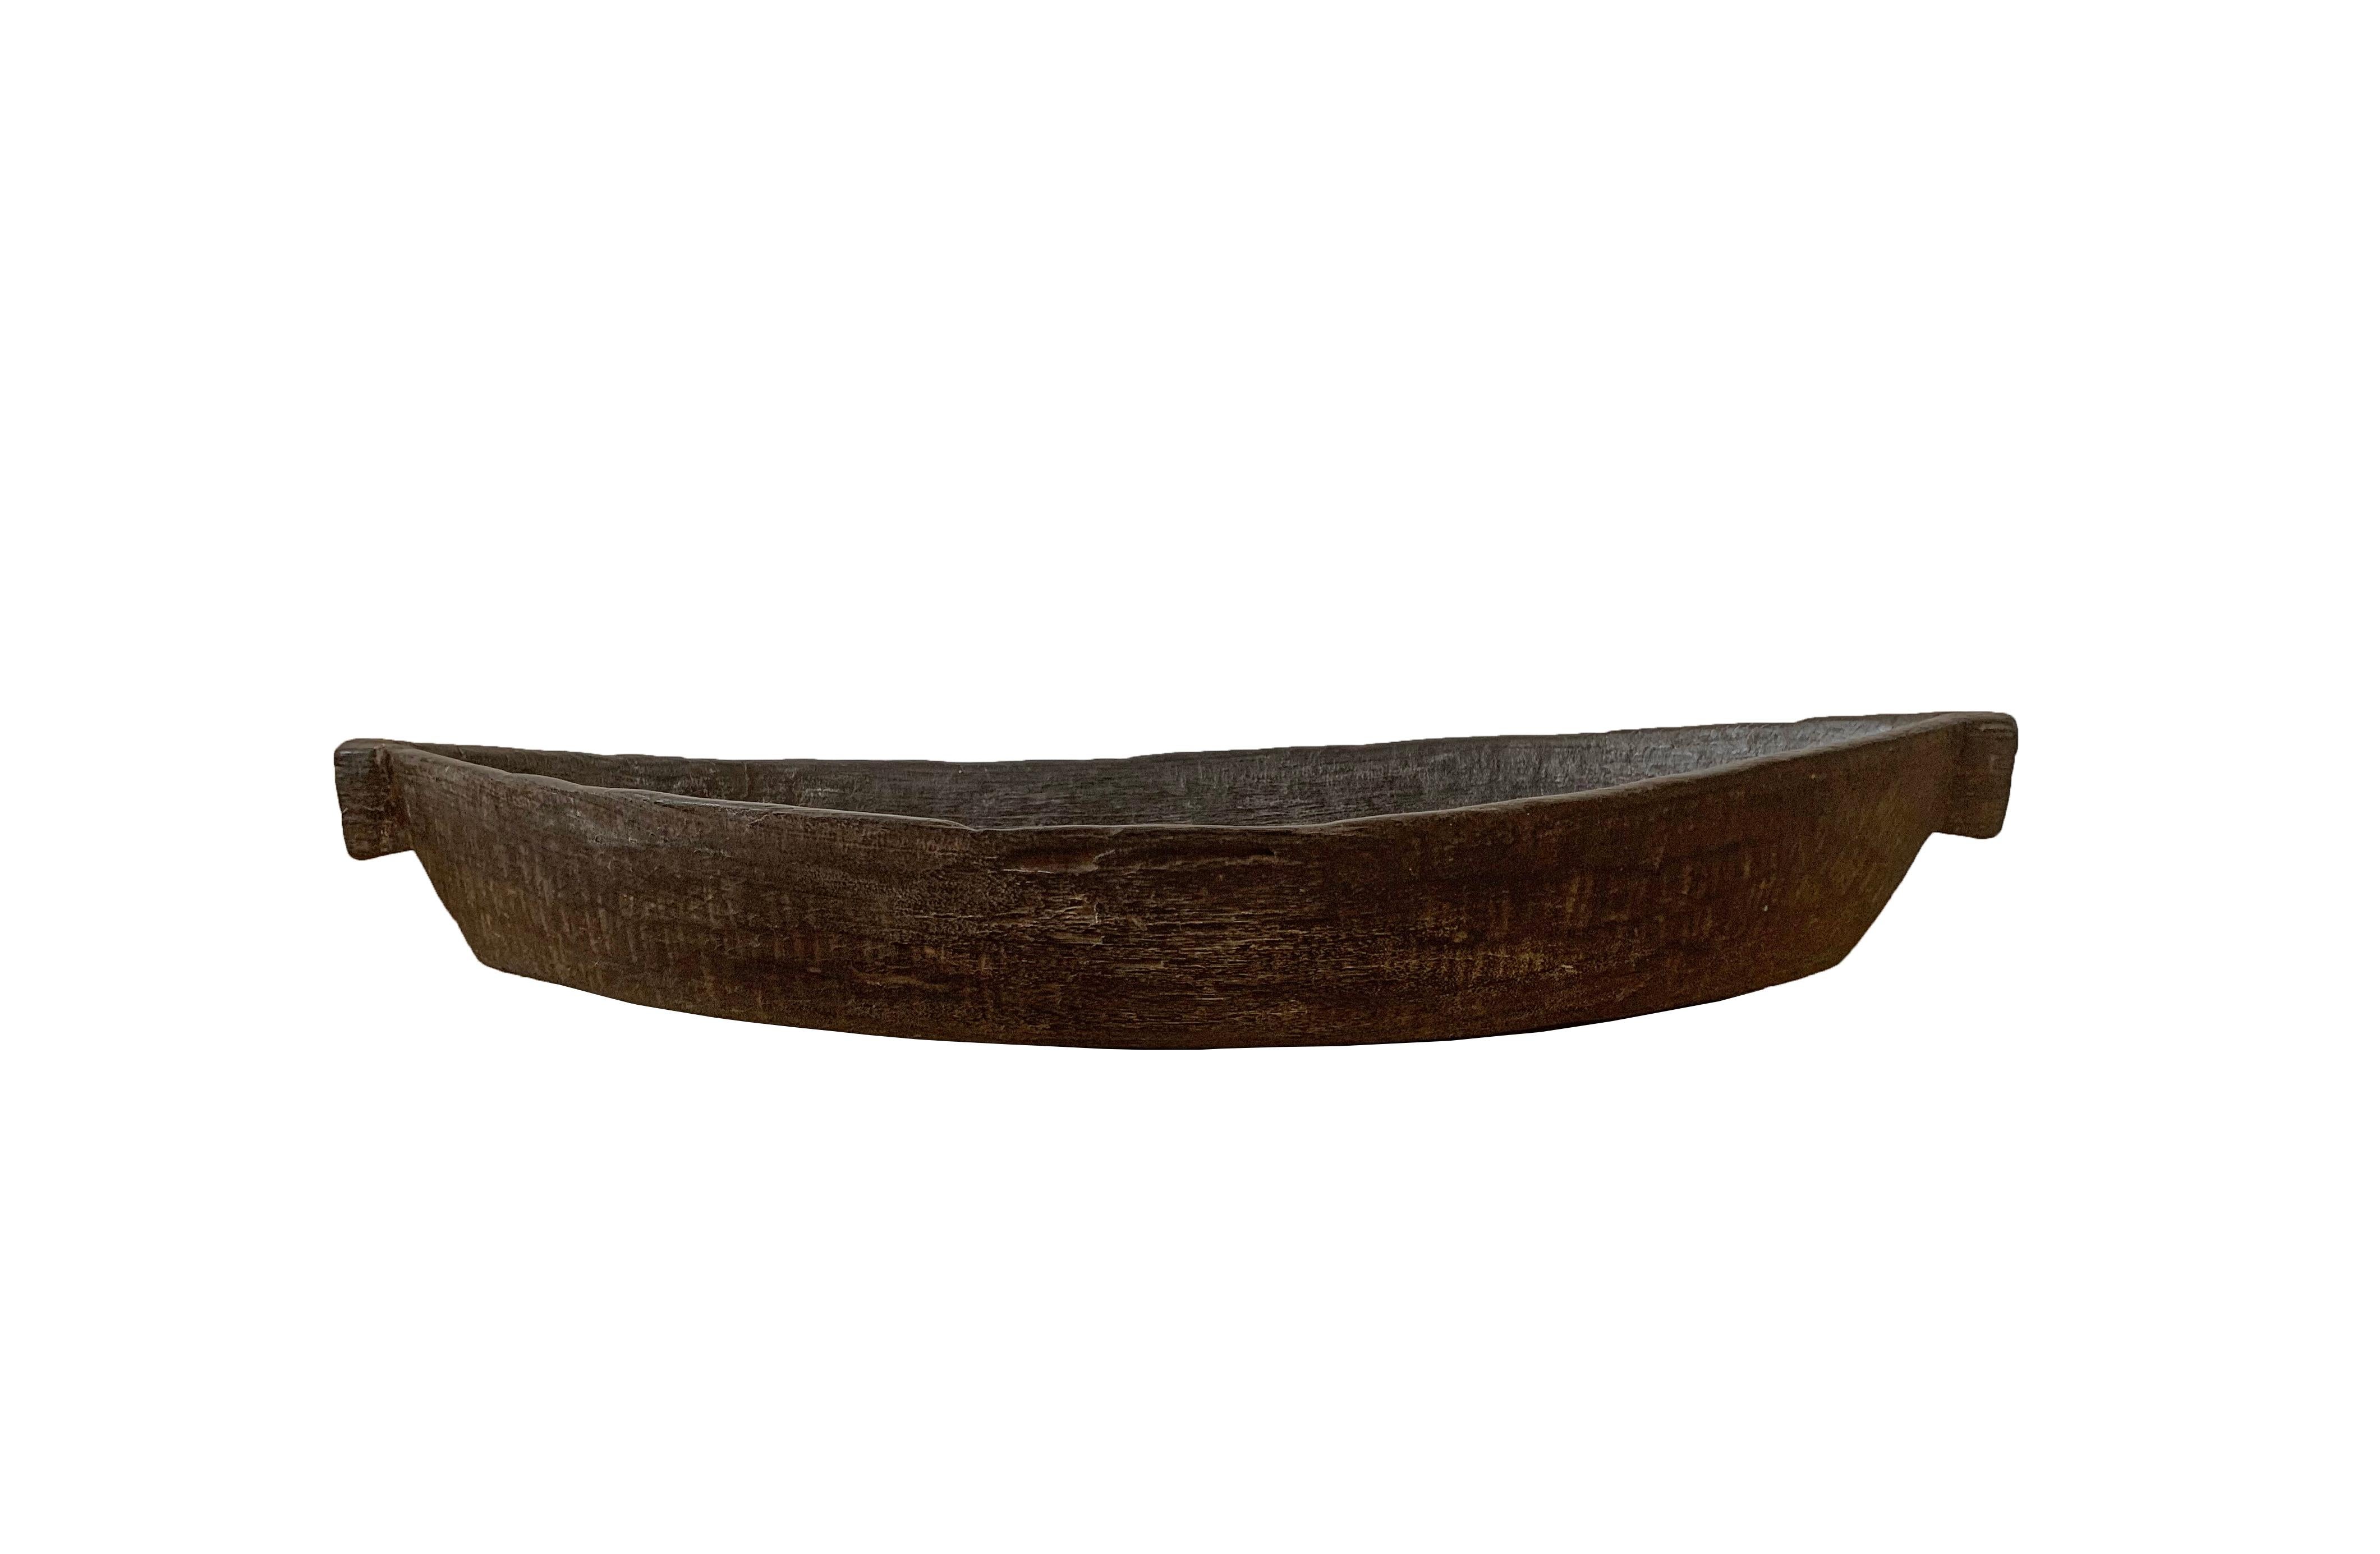 Dieses handgeschnitzte Tablett stammt vom Stamm der Mentawai, der auf den Mentawai-Inseln vor der Westküste Sumatras, Indonesien, lebt. Er wird von Hand aus einem einzigen Holzblock geschnitzt. Diese Tabletts sind wegen ihrer schönen länglichen Form